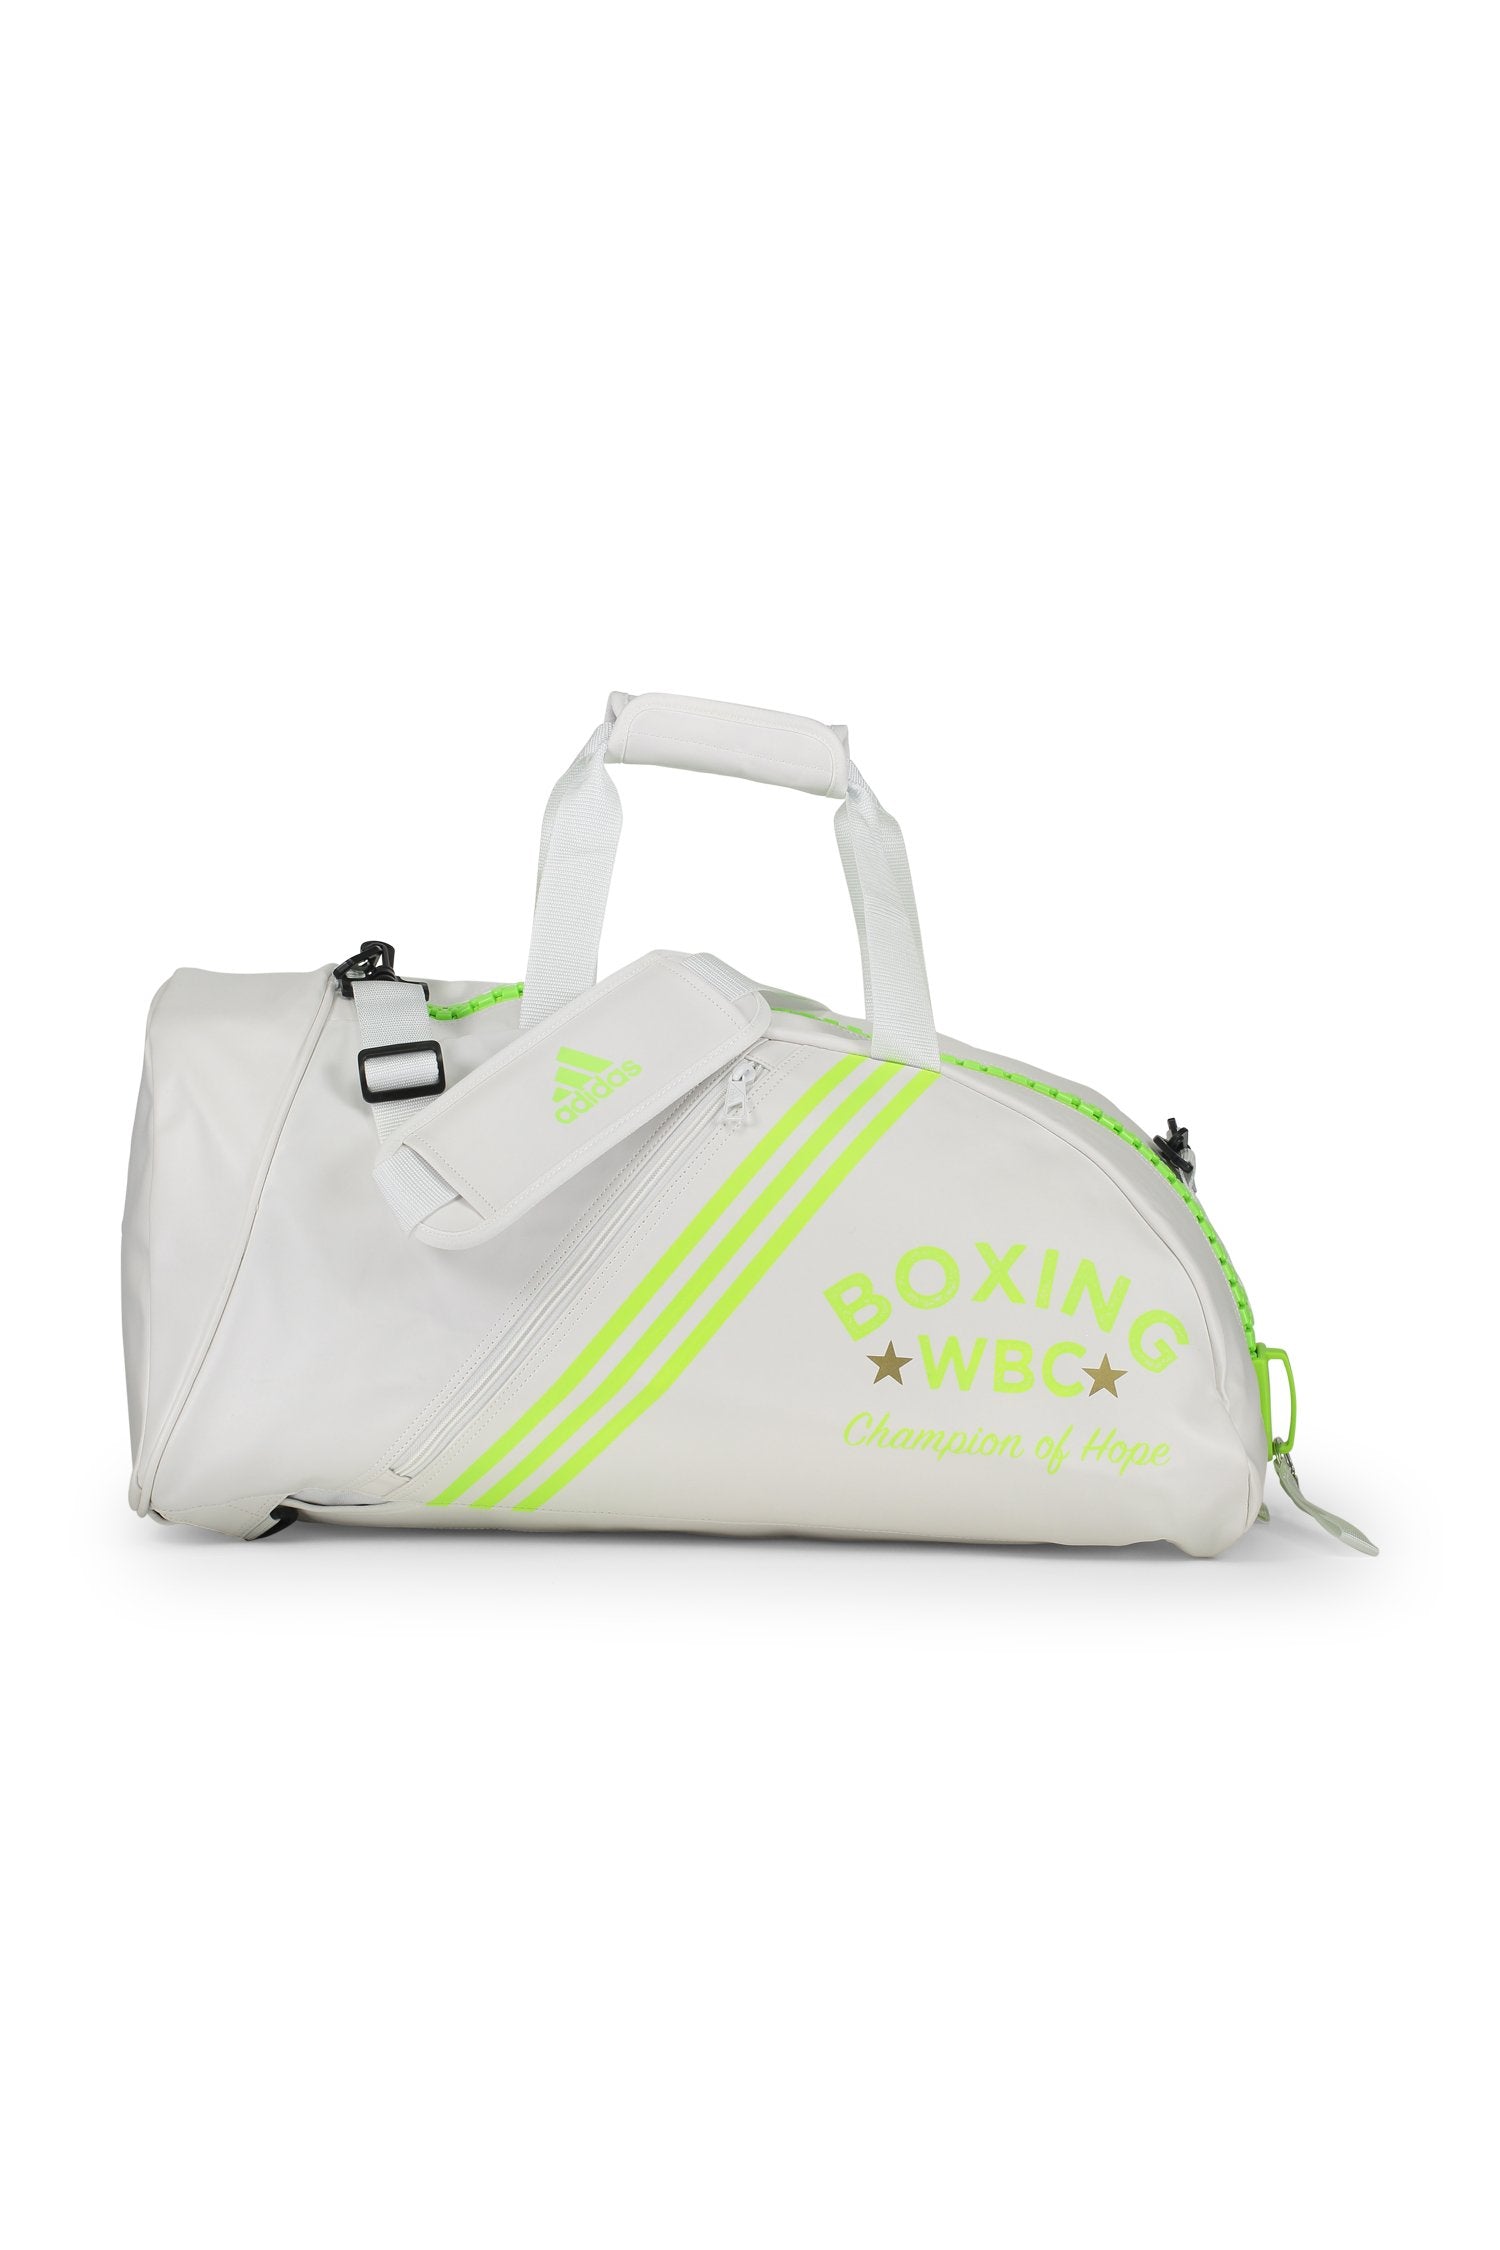 Adidas Bags Medium / White WBC/Adidas Gym & Travel Bag